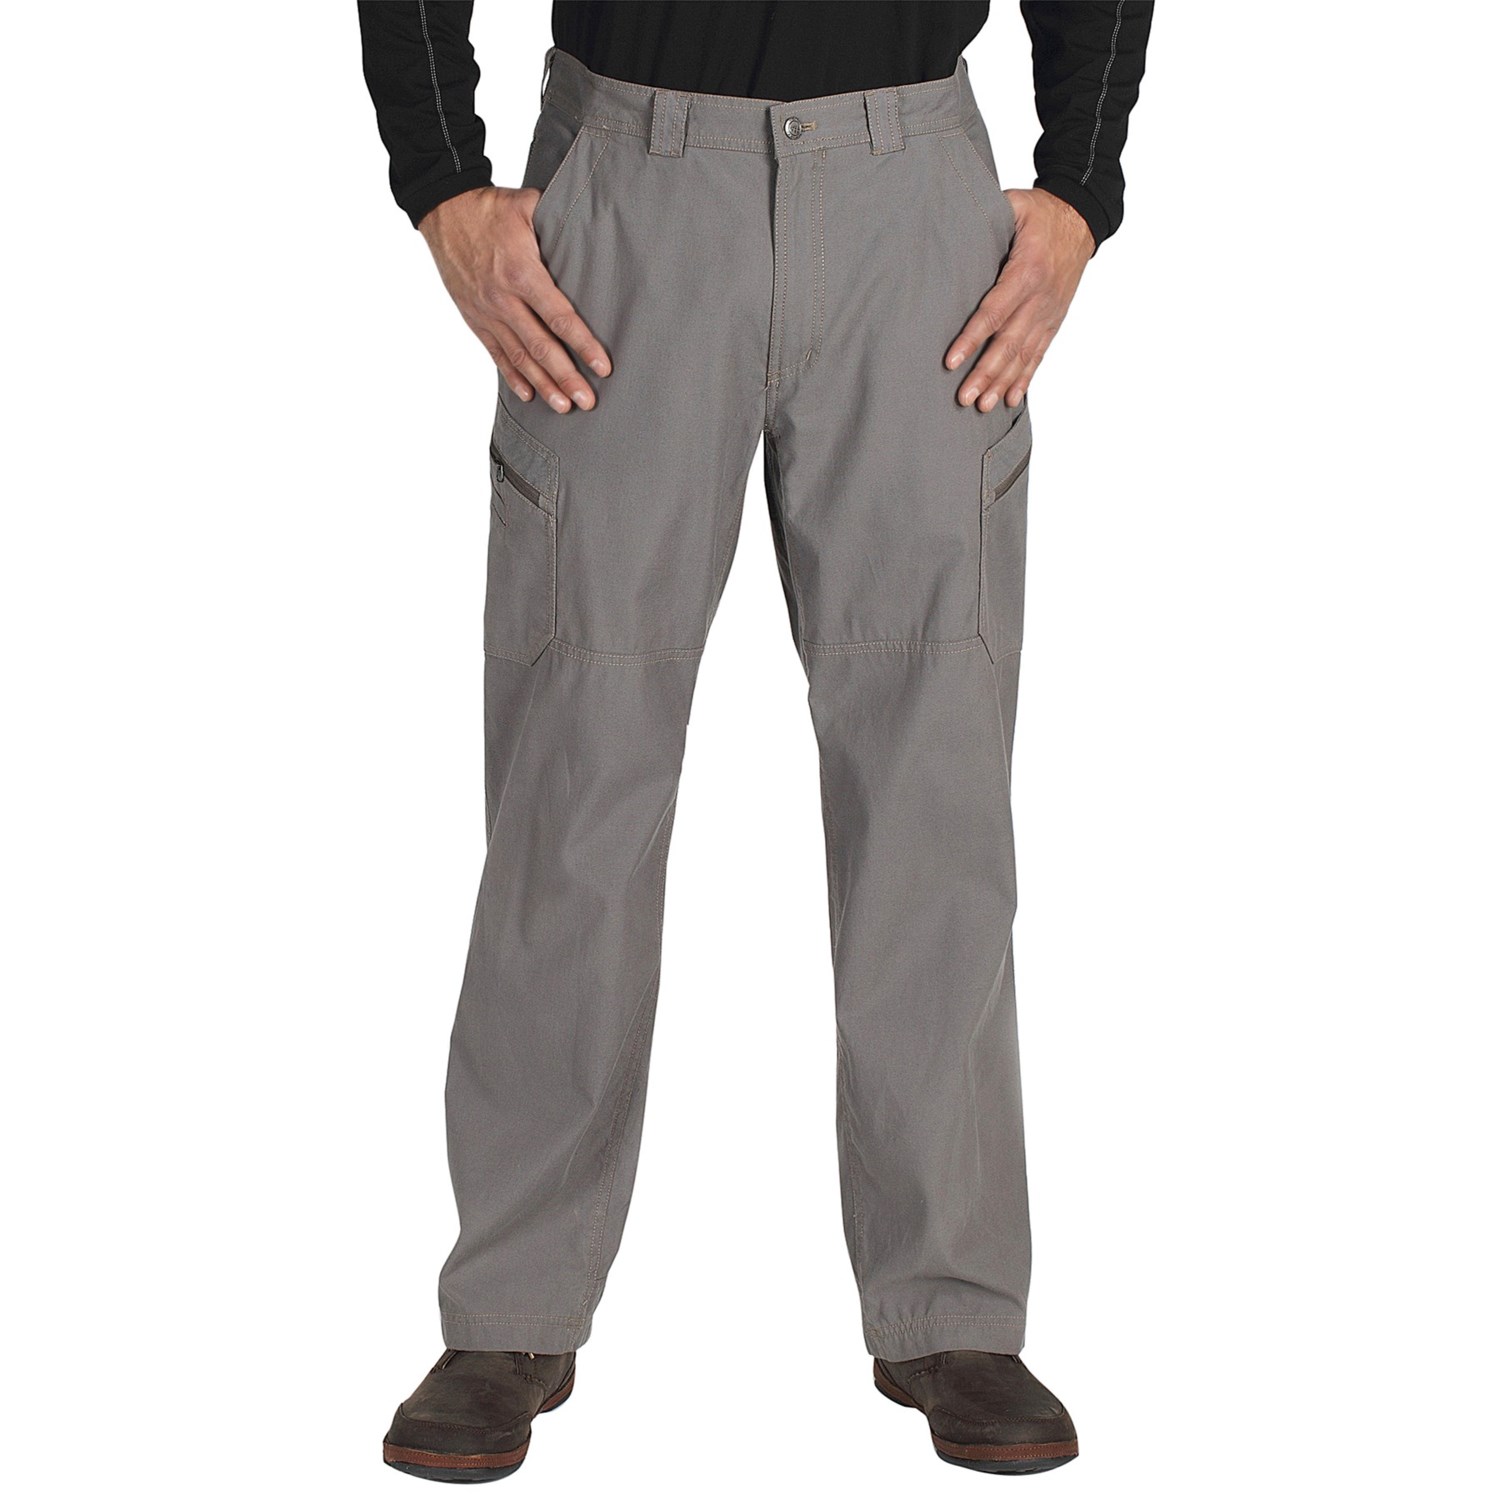 ExOfficio Roughian Cargo Pants (For Men) 5492W - Save 30%